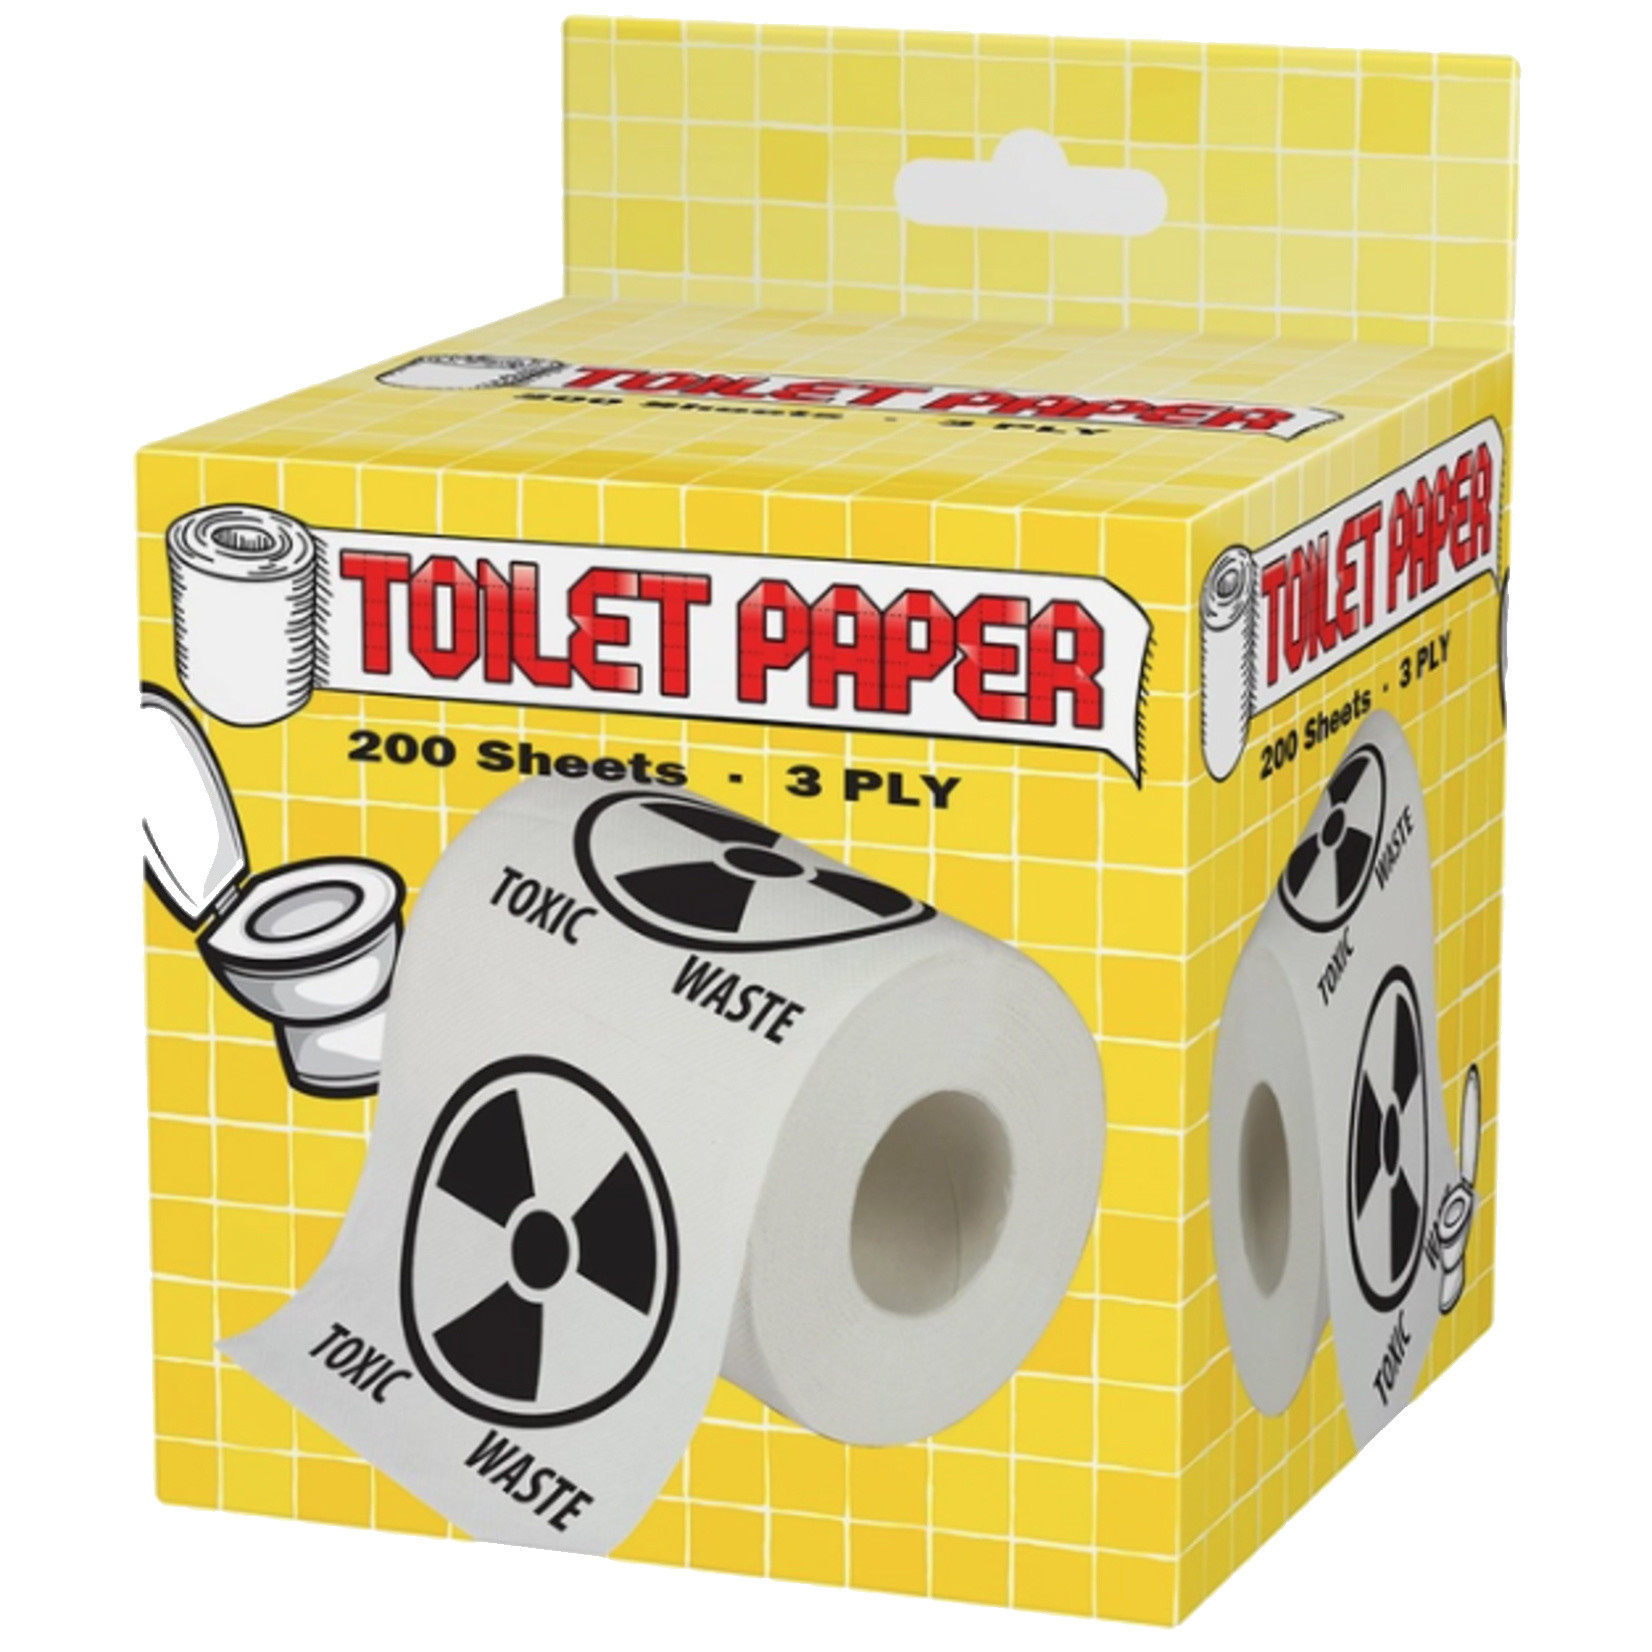 Toilet Paper - Toxic Waste